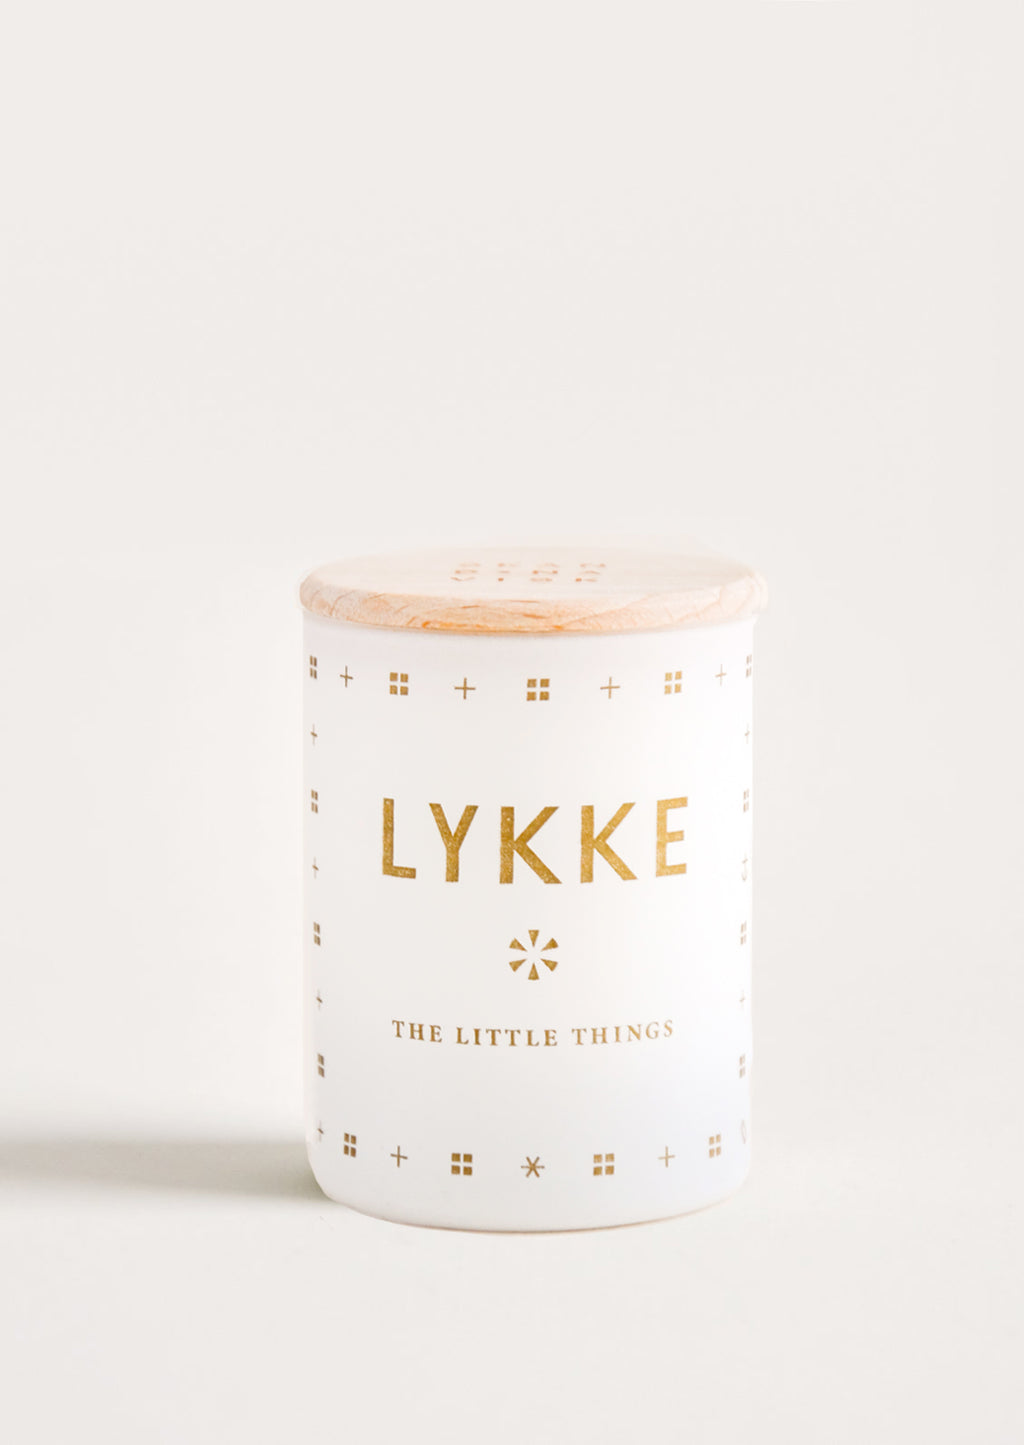 2 oz / Lykke (Happiness): Skandinavisk Candle in 2 oz / Lykke (Happiness) - LEIF